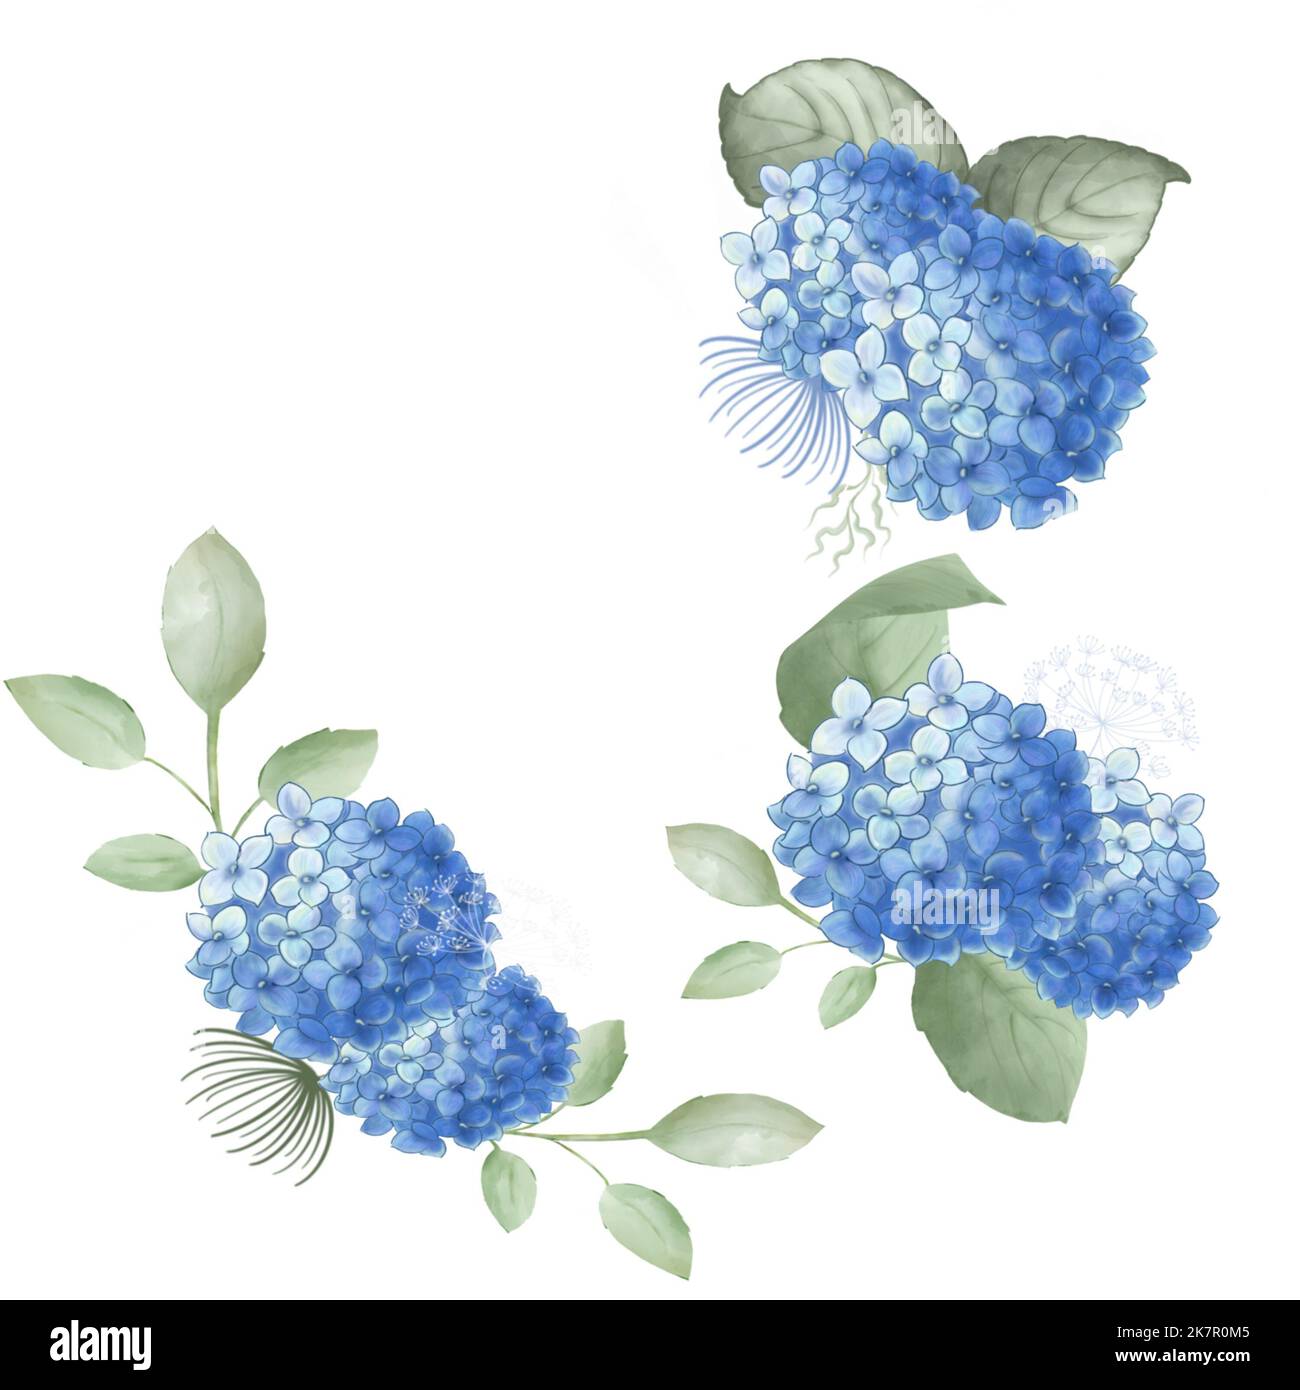 Ensemble d'éléments d'hortensias bleus avec feuilles vertes. Aquarelle peinture.Nice design pour l'invitation de mariage, carte greetibg, réseaux sociaux. Banque D'Images